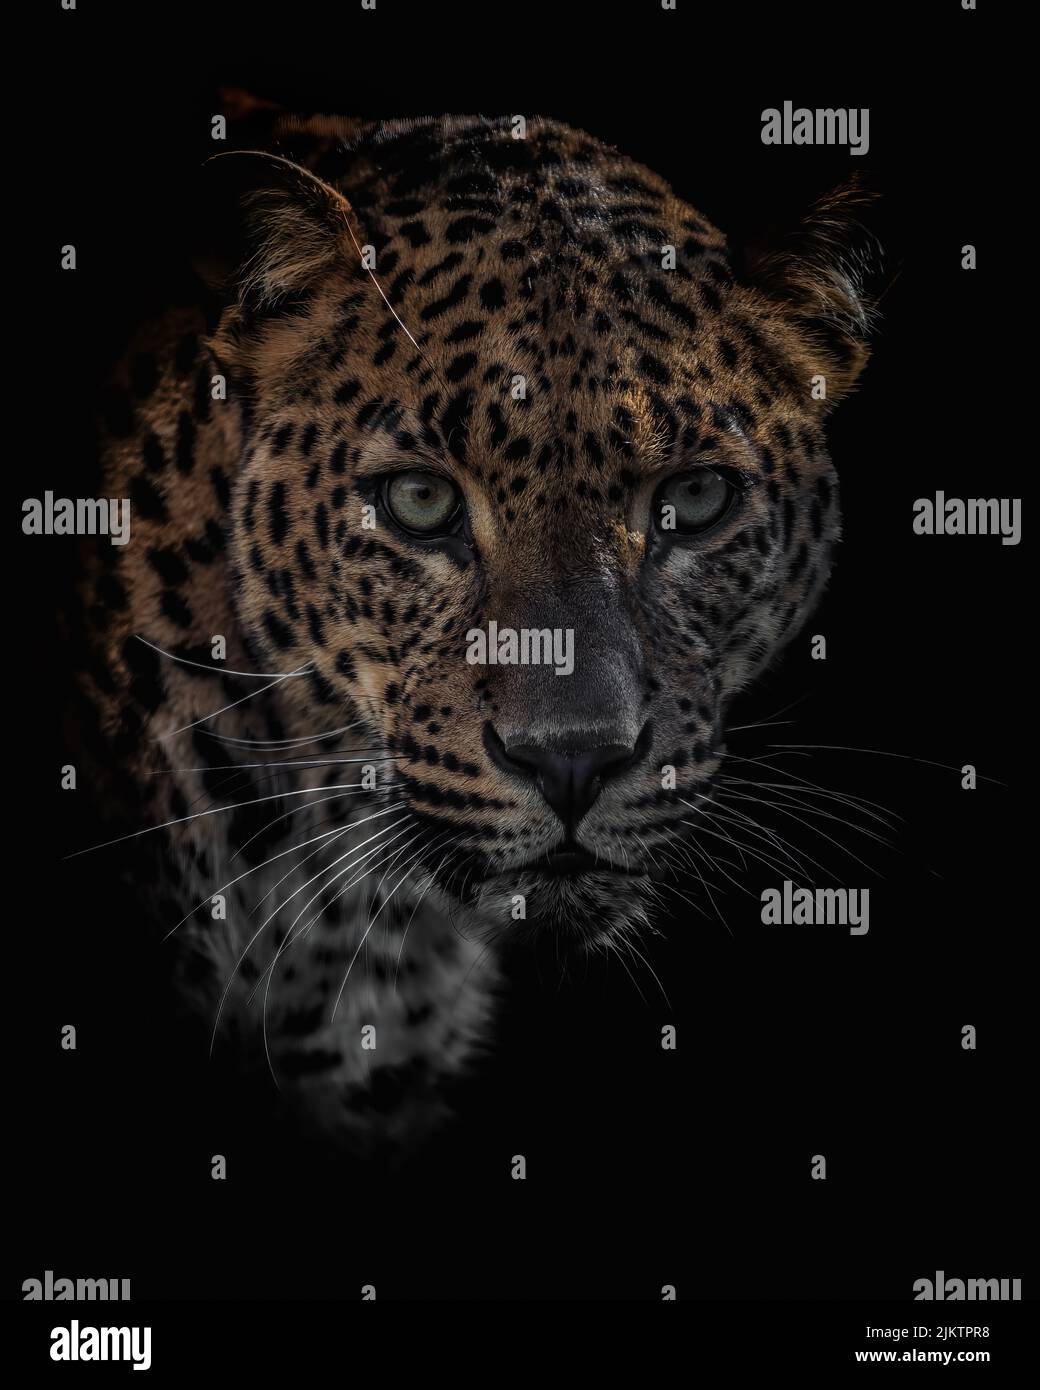 Photo panoramique d'un chat sauvage de léopard sri-lankais sortant de l'obscurité Banque D'Images